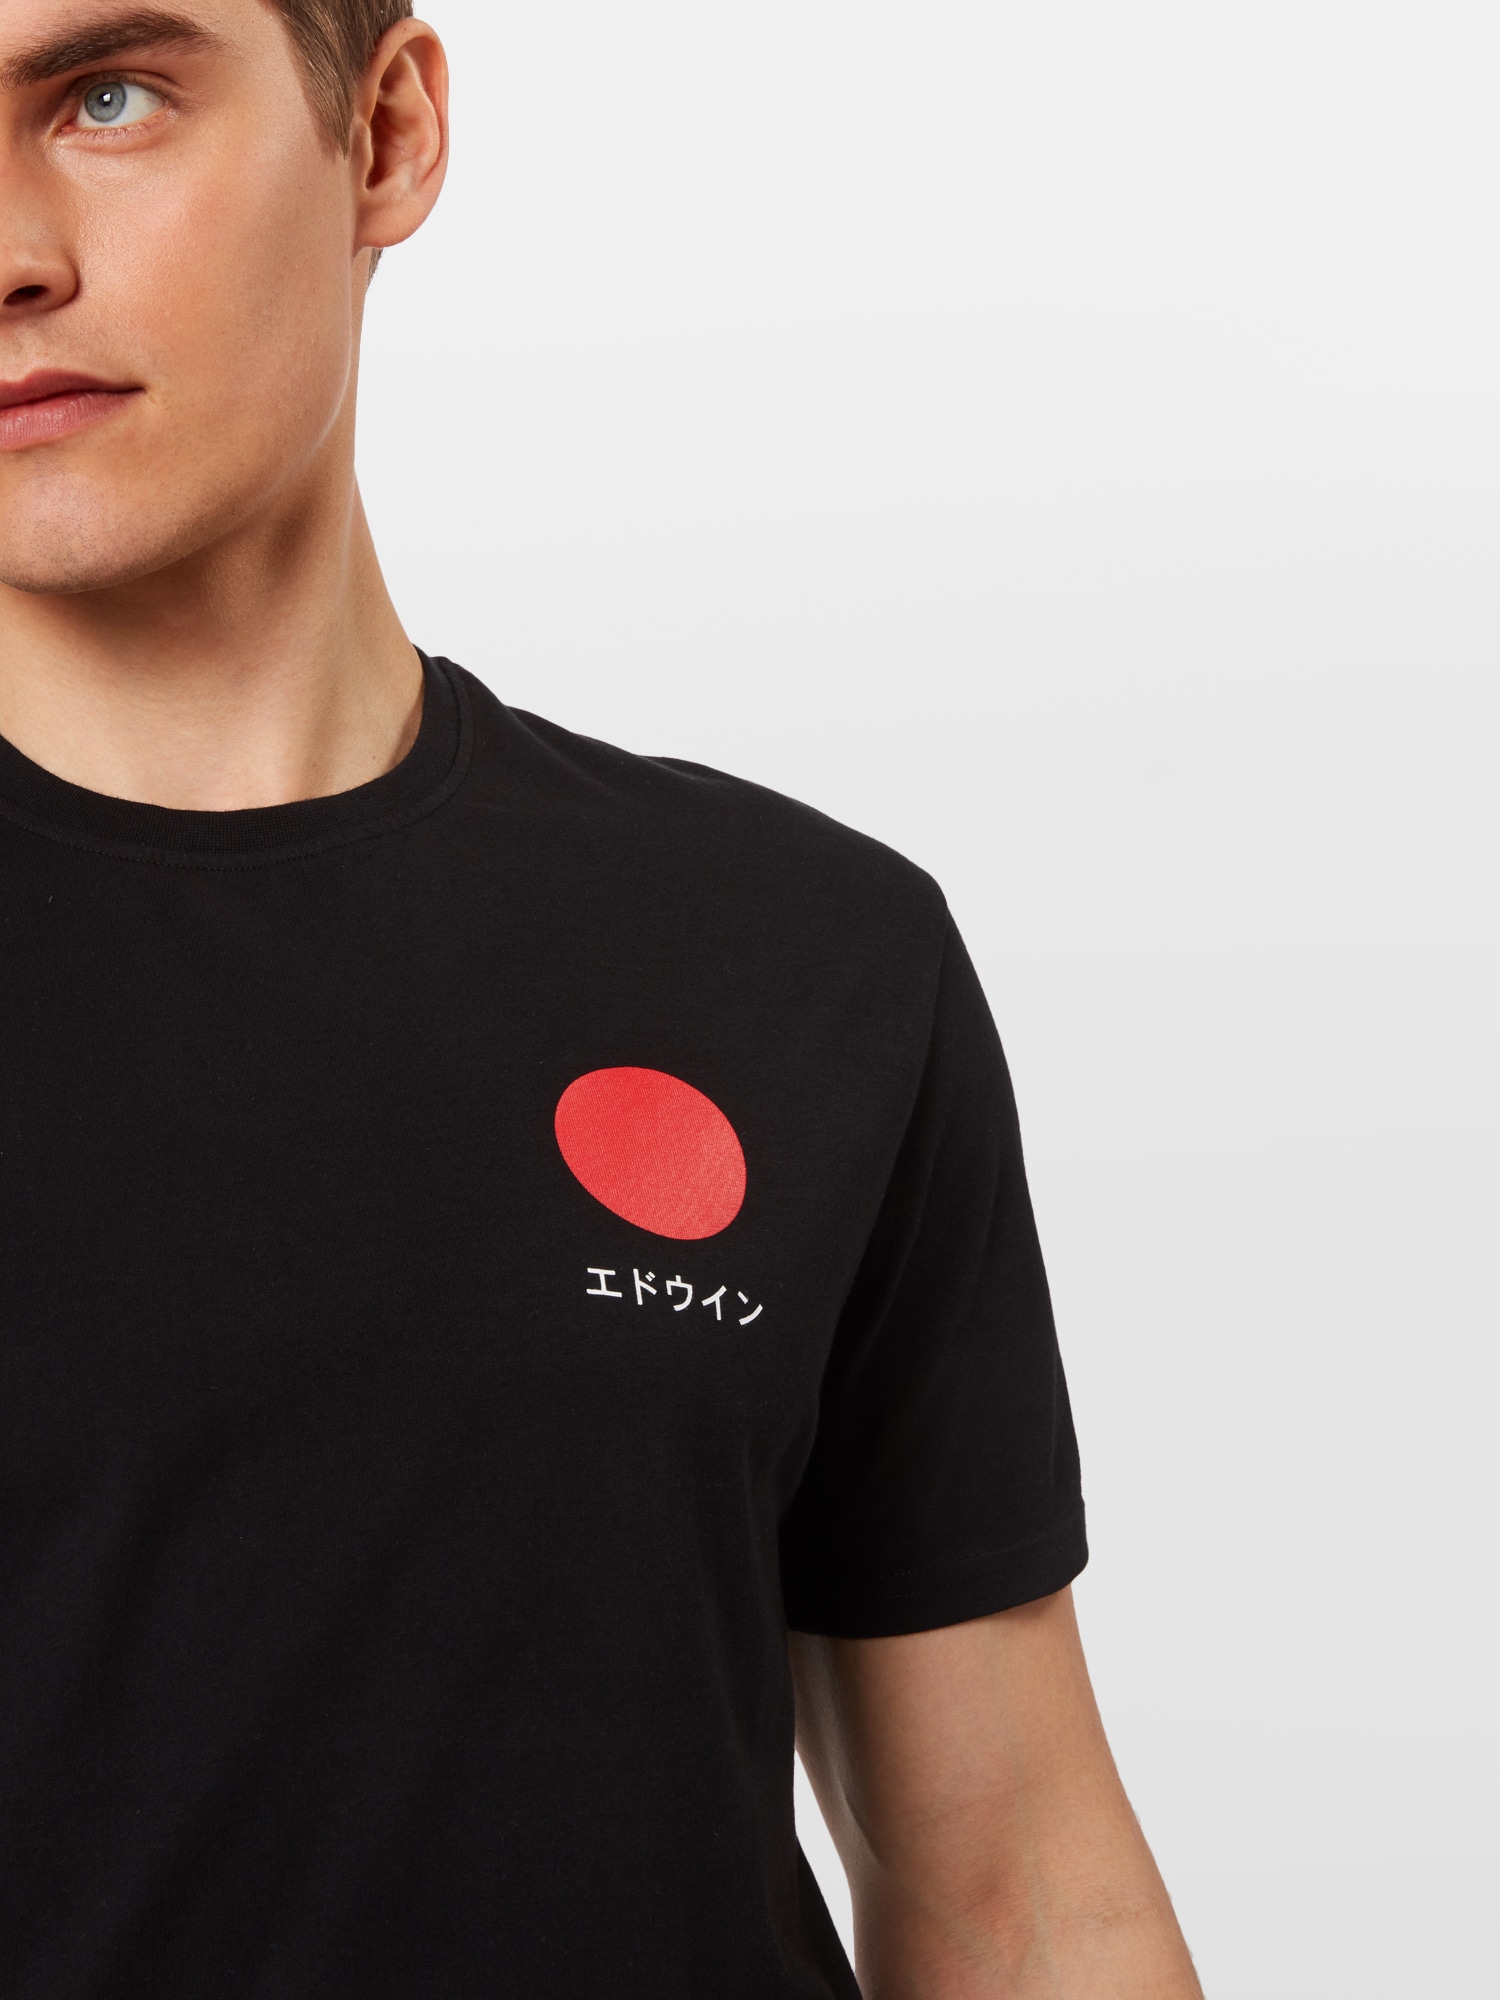 Shirt 'Japanese Sun TS' von EDWIN